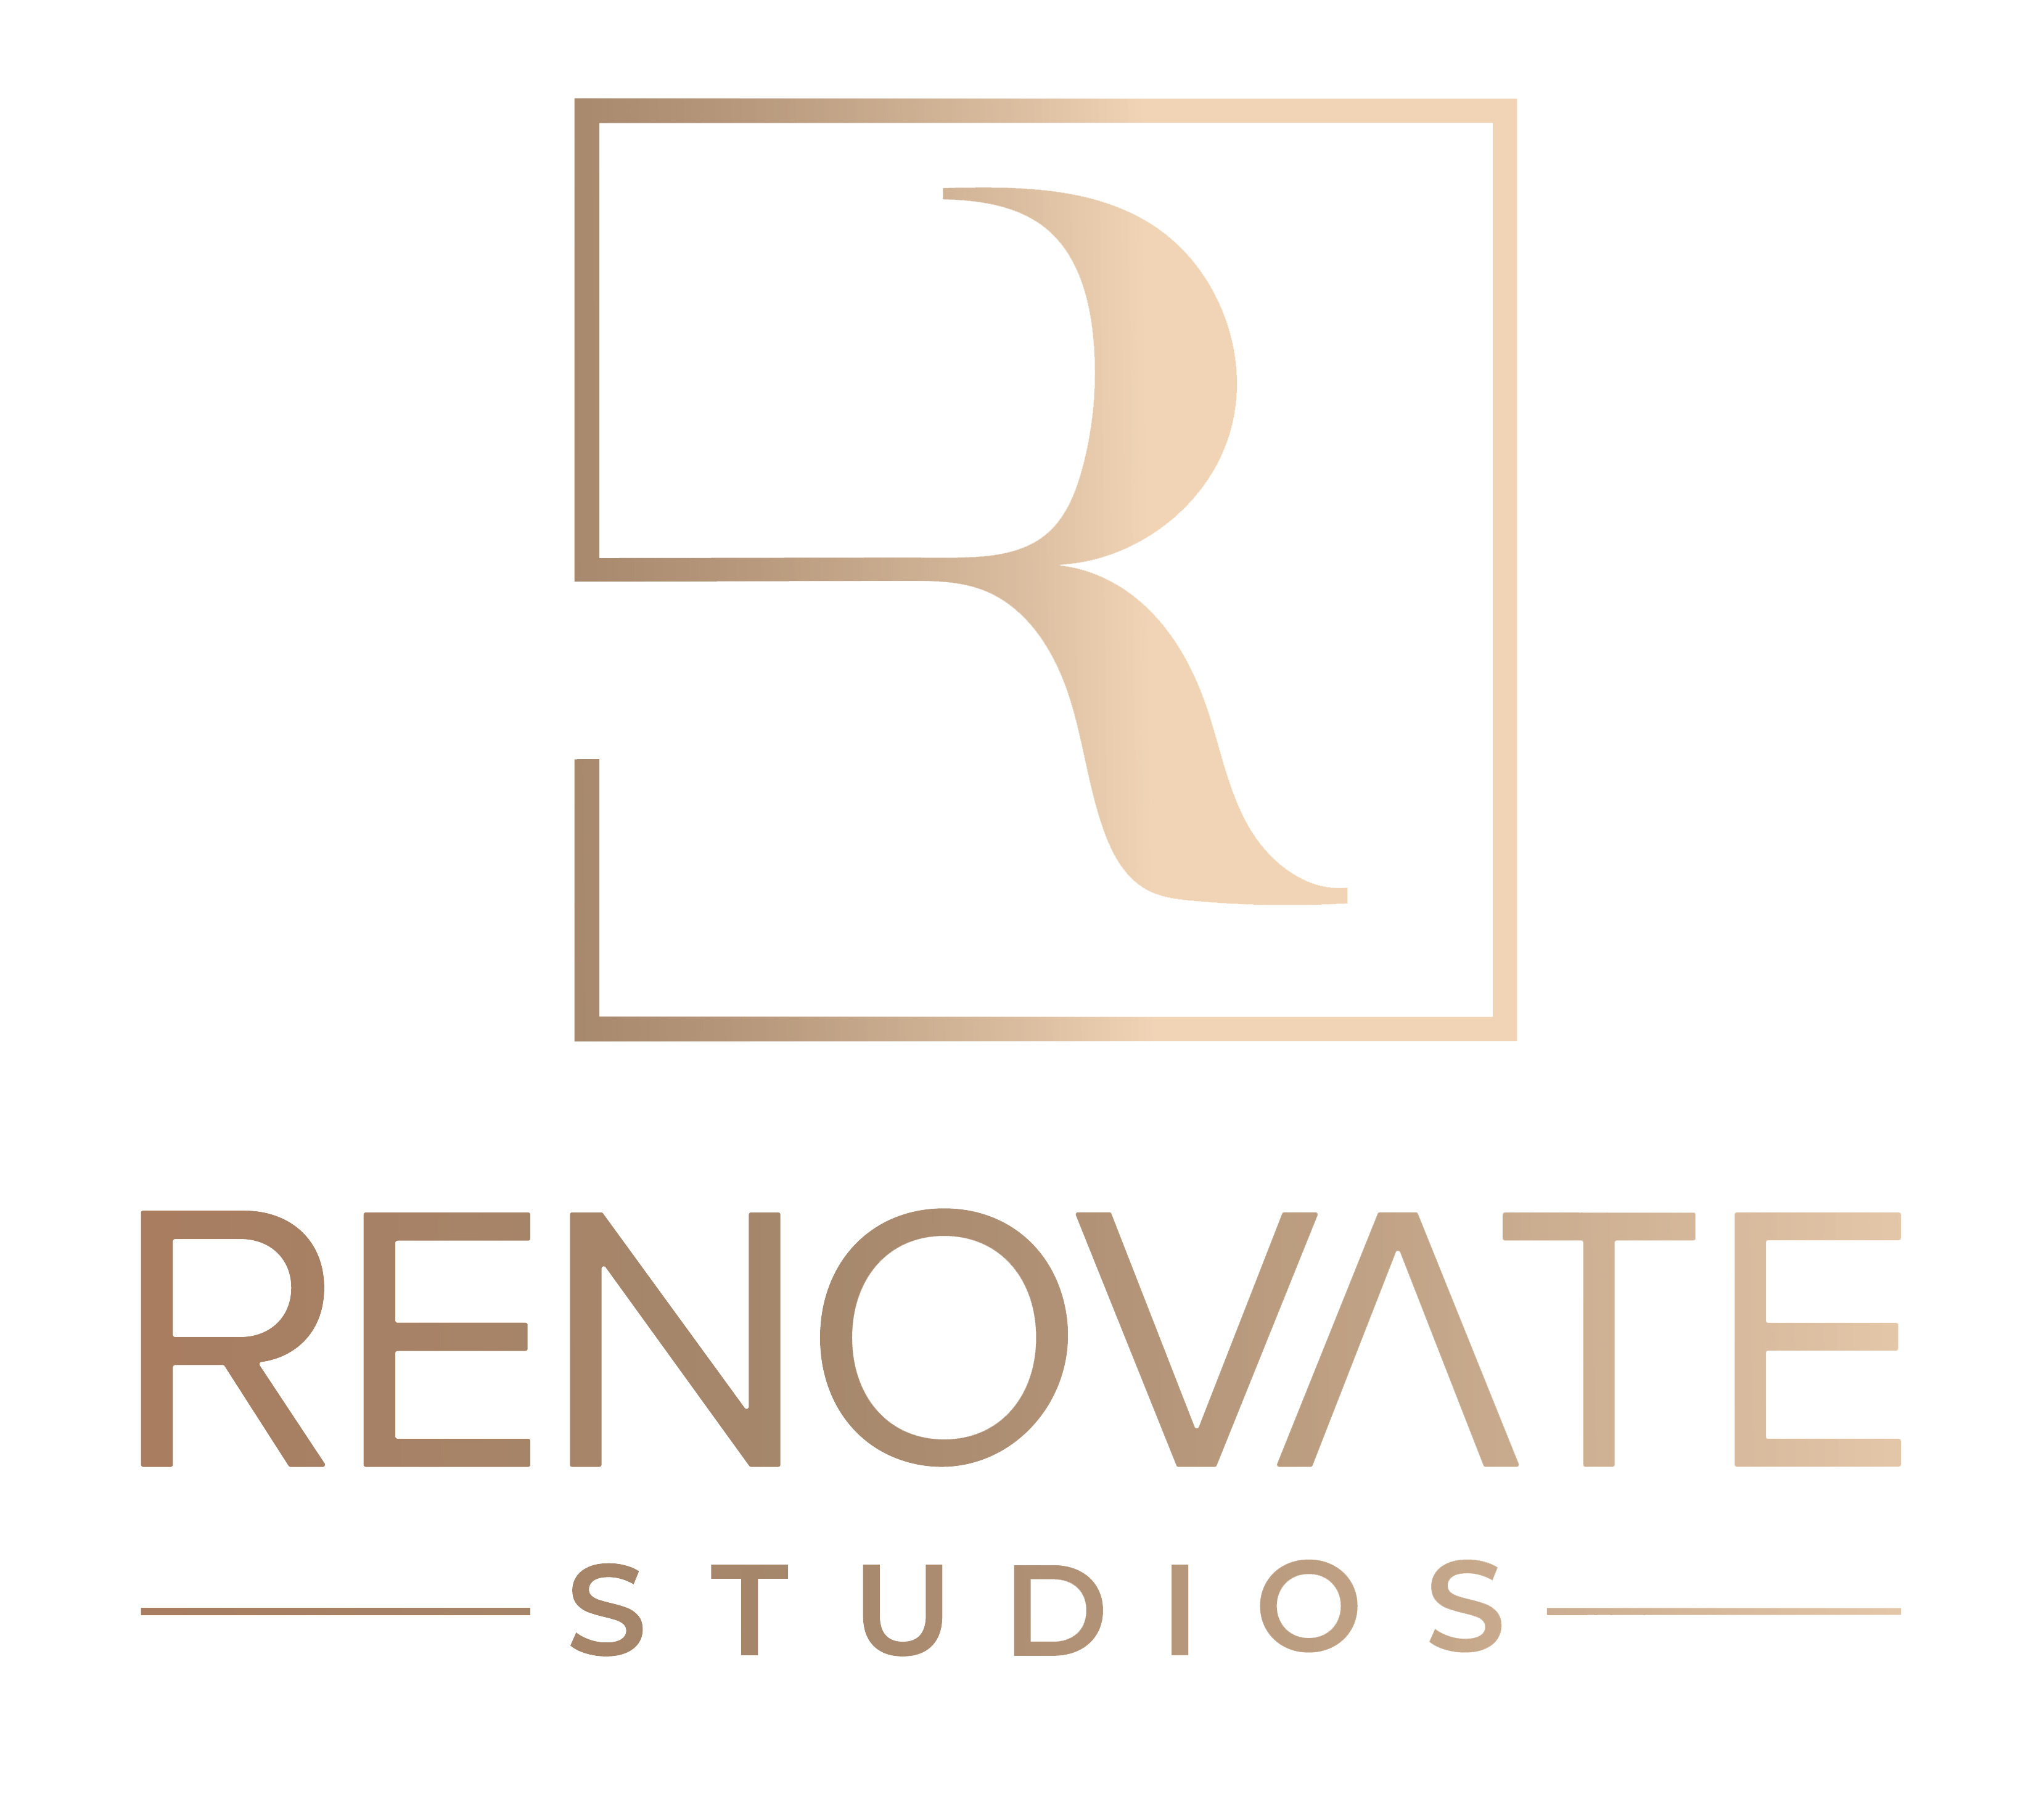 Renovate Studios